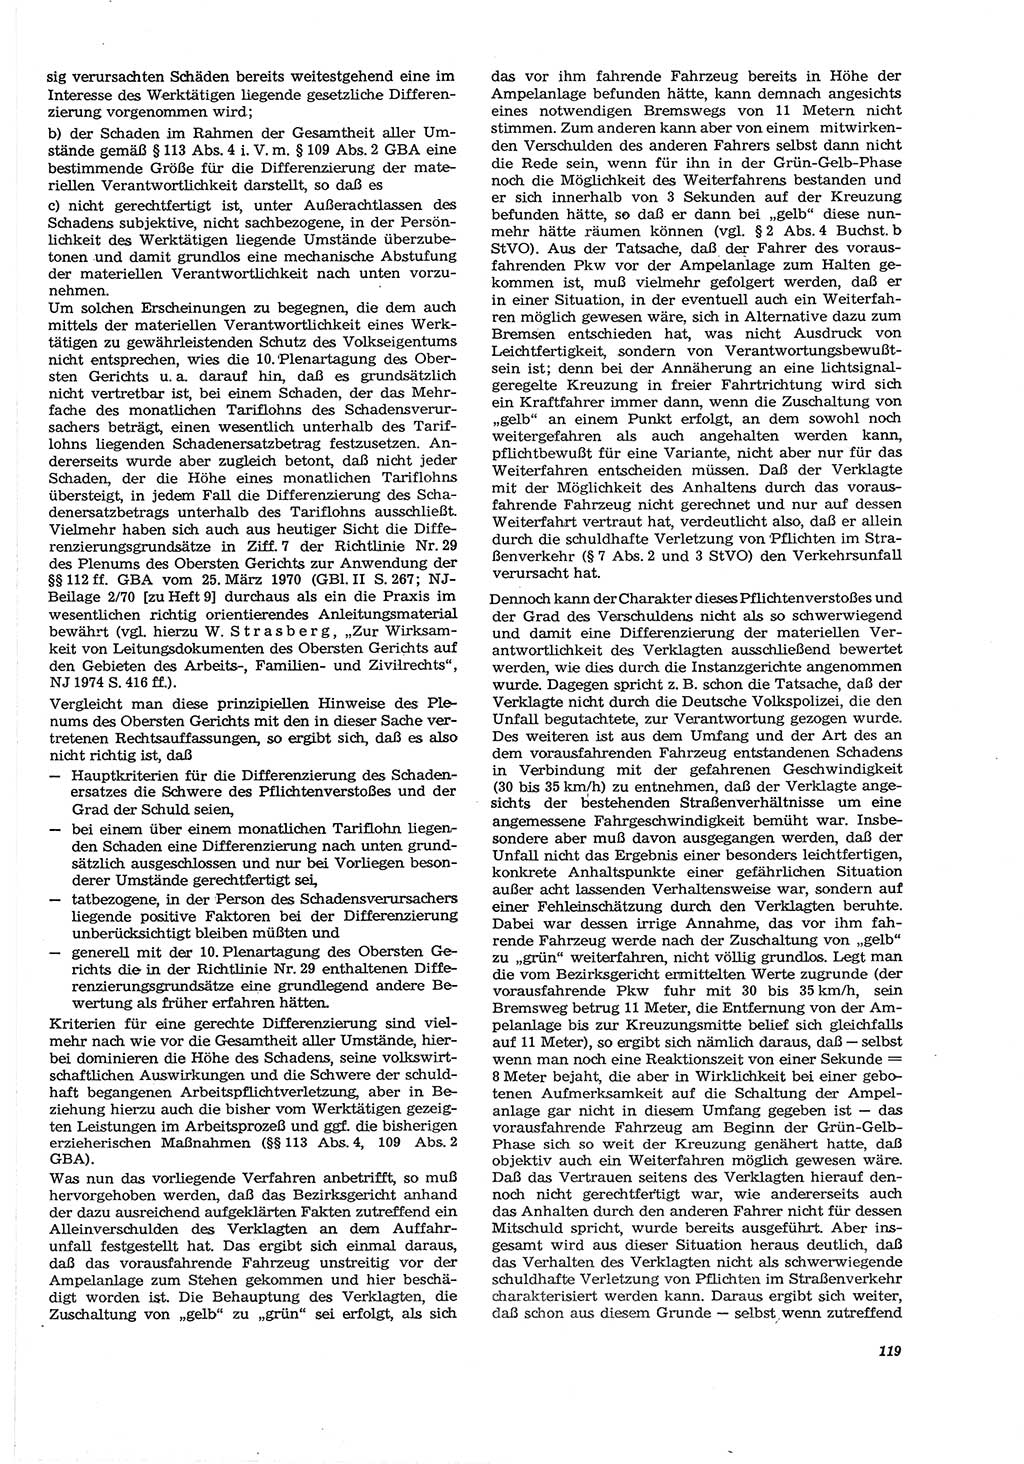 Neue Justiz (NJ), Zeitschrift für Recht und Rechtswissenschaft [Deutsche Demokratische Republik (DDR)], 30. Jahrgang 1976, Seite 119 (NJ DDR 1976, S. 119)